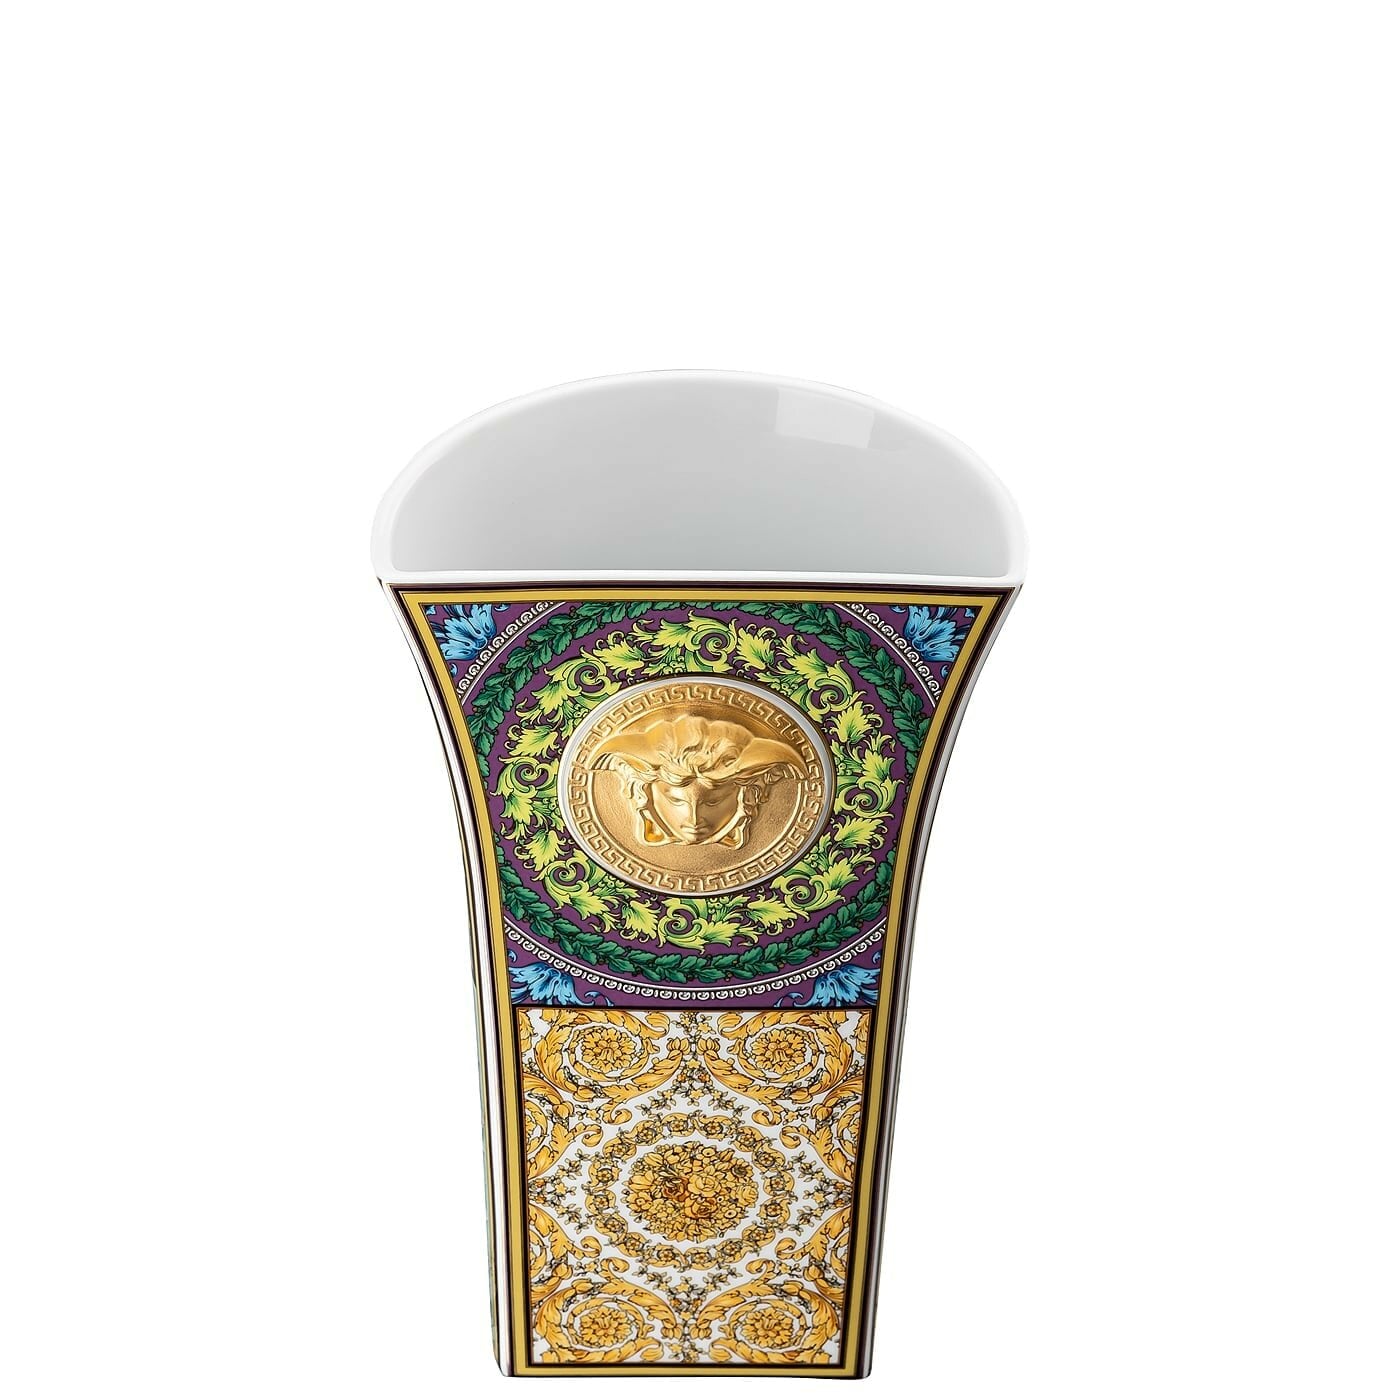 VERSACE Barocco Mosaic Vaso di Fiori 26cm Porcellana 14461-403728-26026